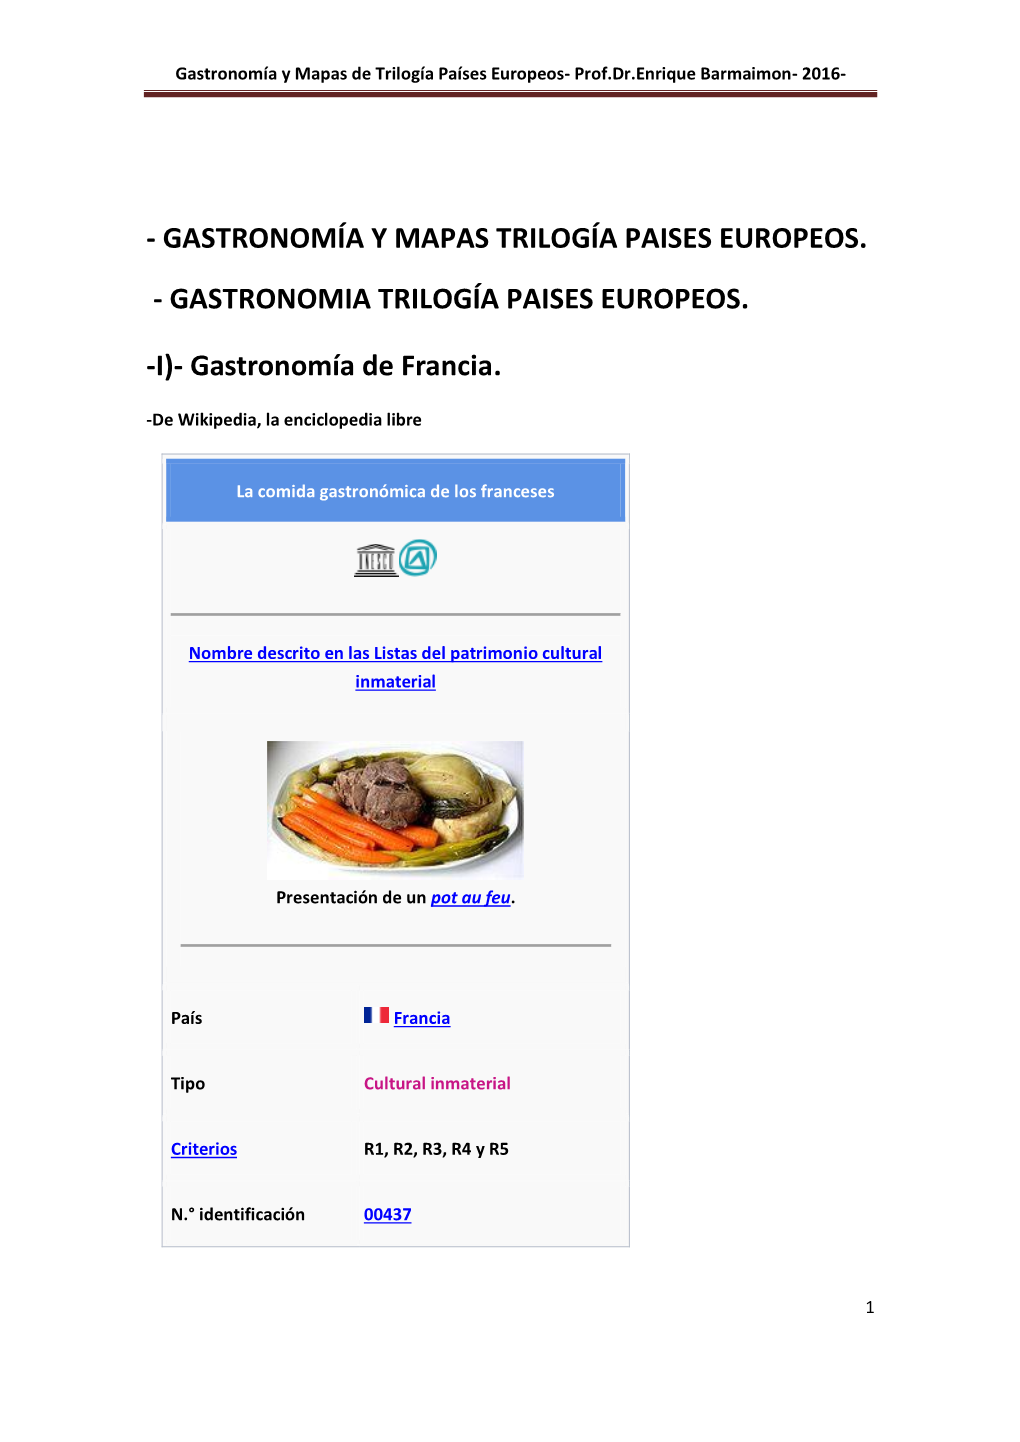 Gastronomía Y Mapas Trilogía Paises Europeos. - Gastronomia Trilogía Paises Europeos